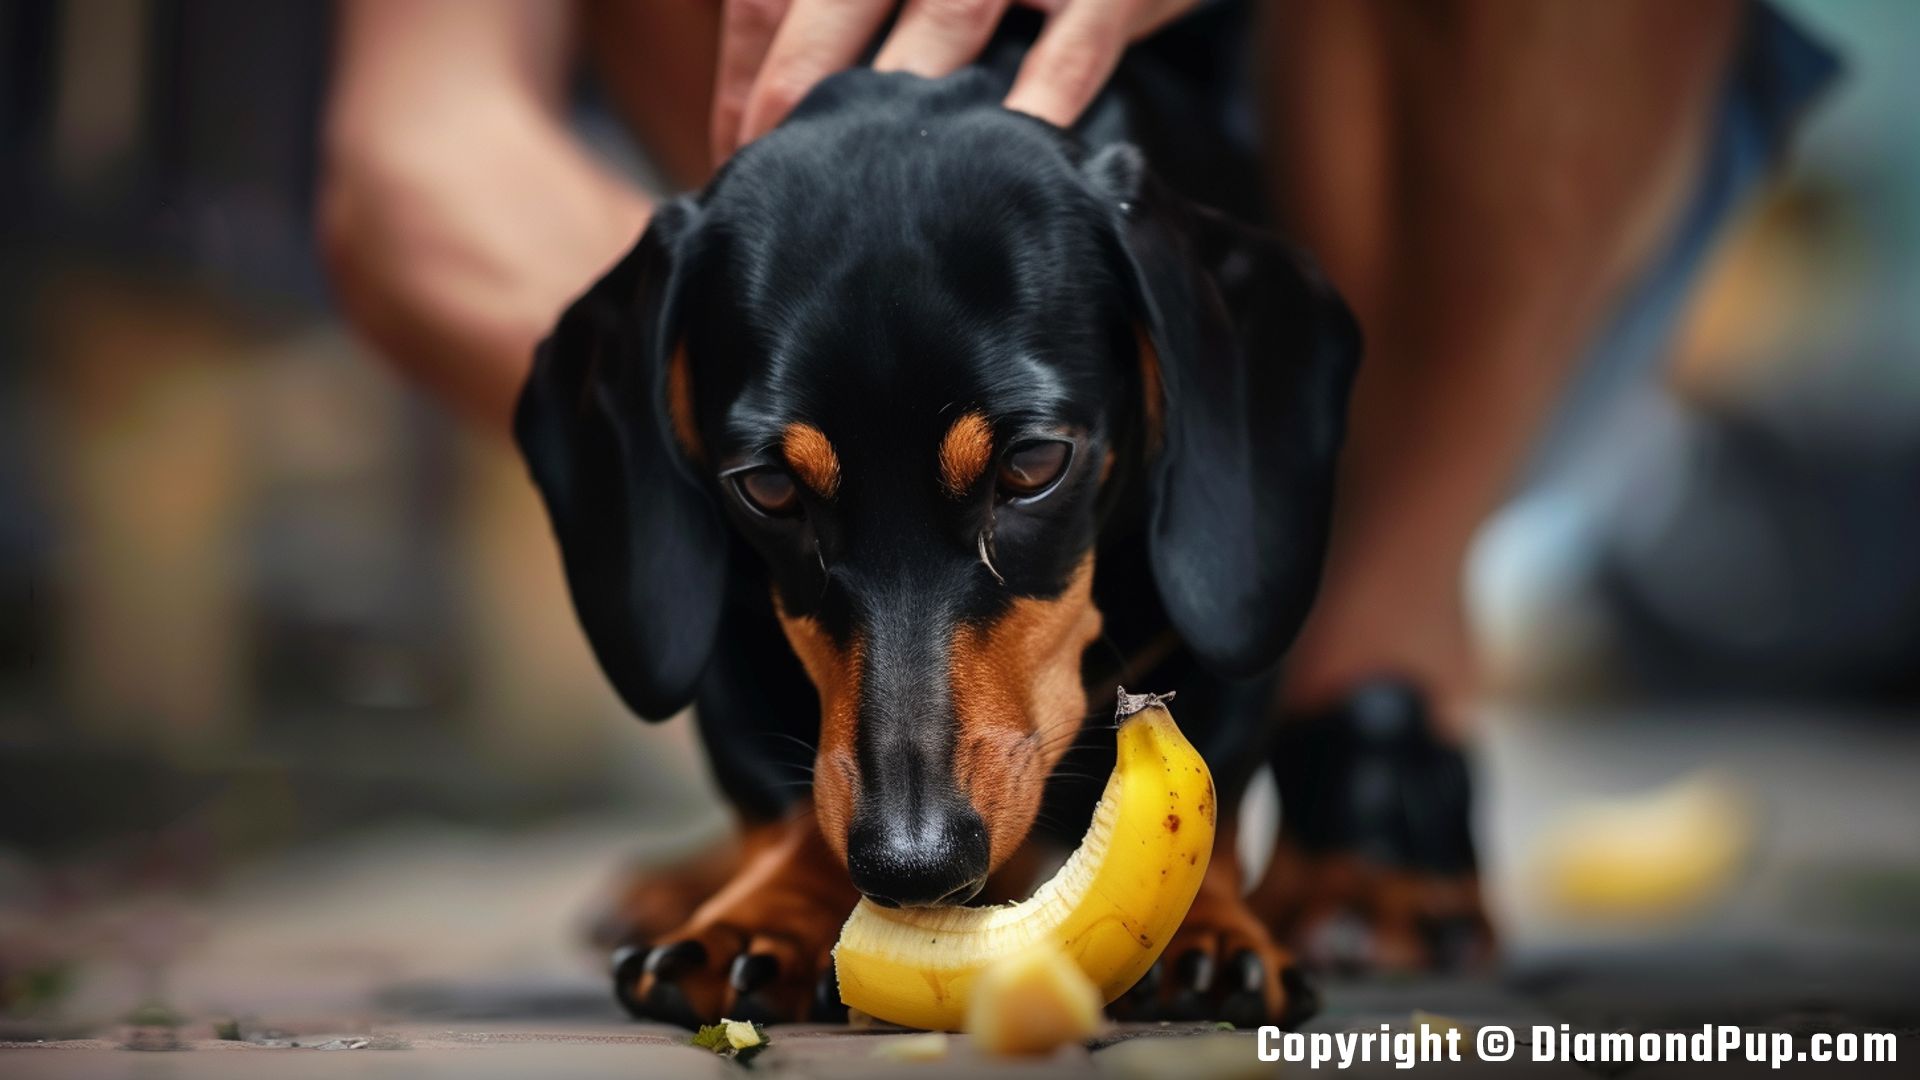 Photograph of an Adorable Dachshund Snacking on Banana